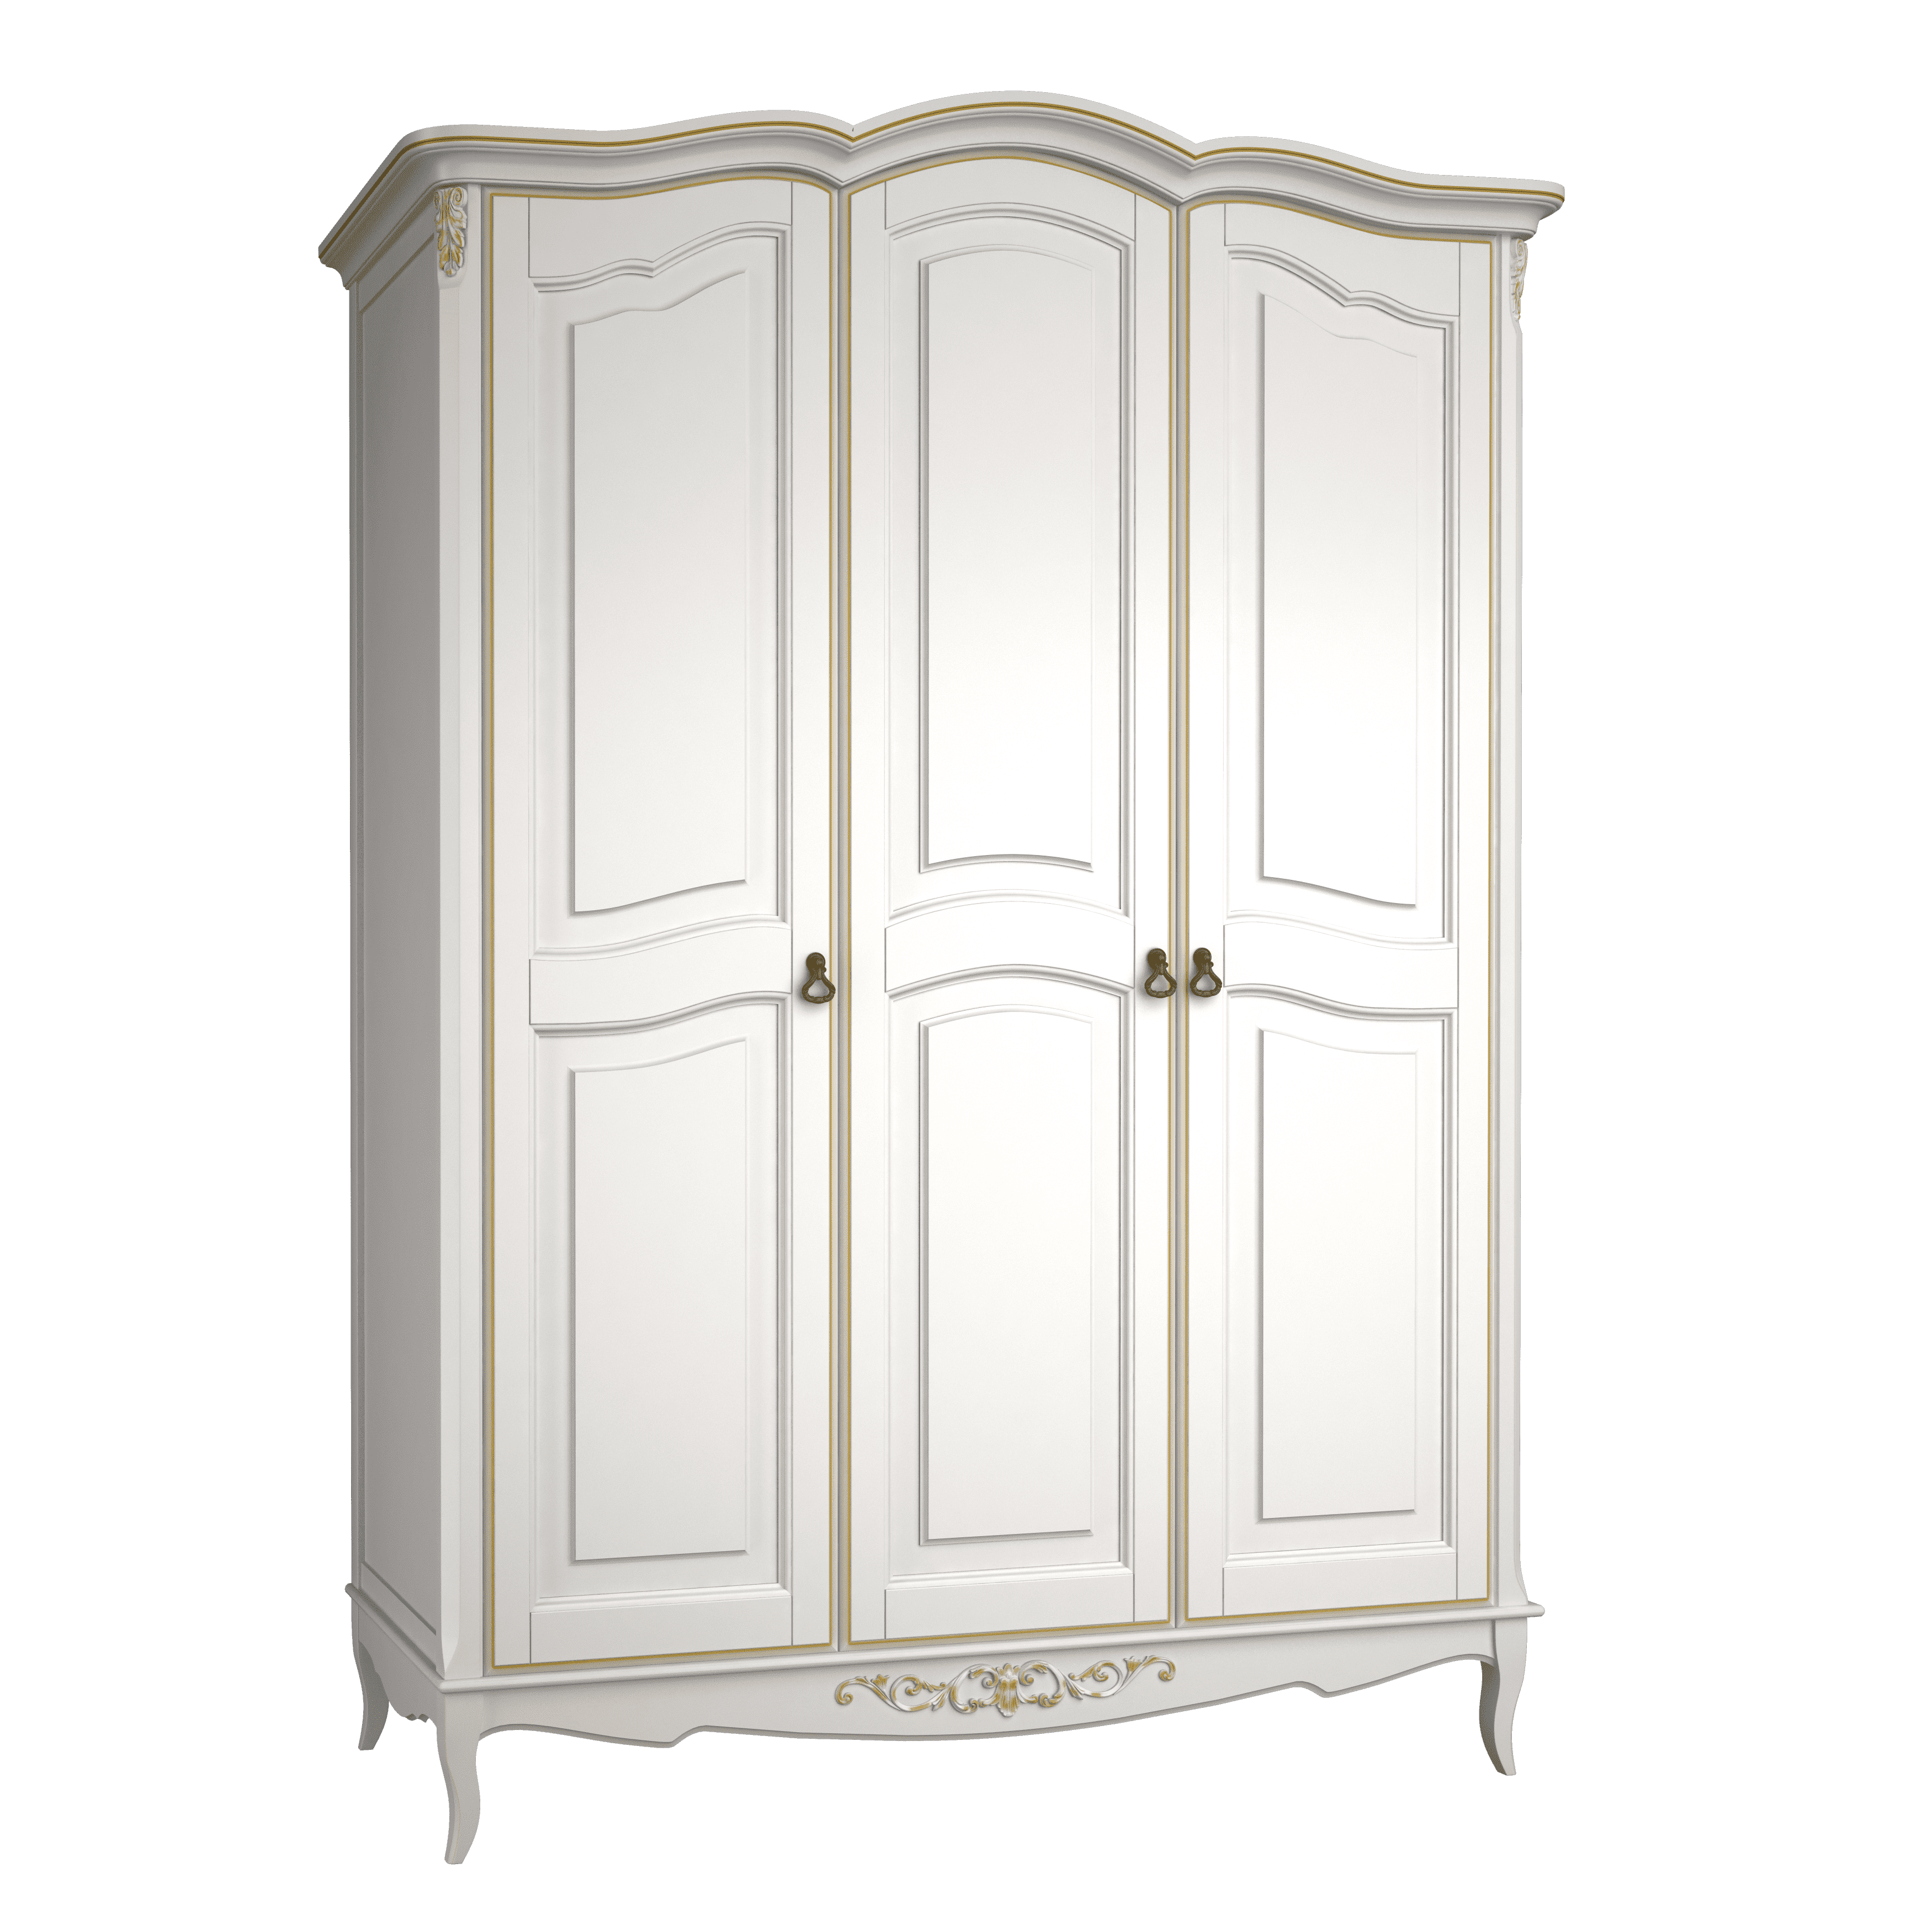 Шкаф платяной Aletan Provence, 3-х дверный, цвет: слоновая кость-золото 162х66х223 см (B803G)B803G